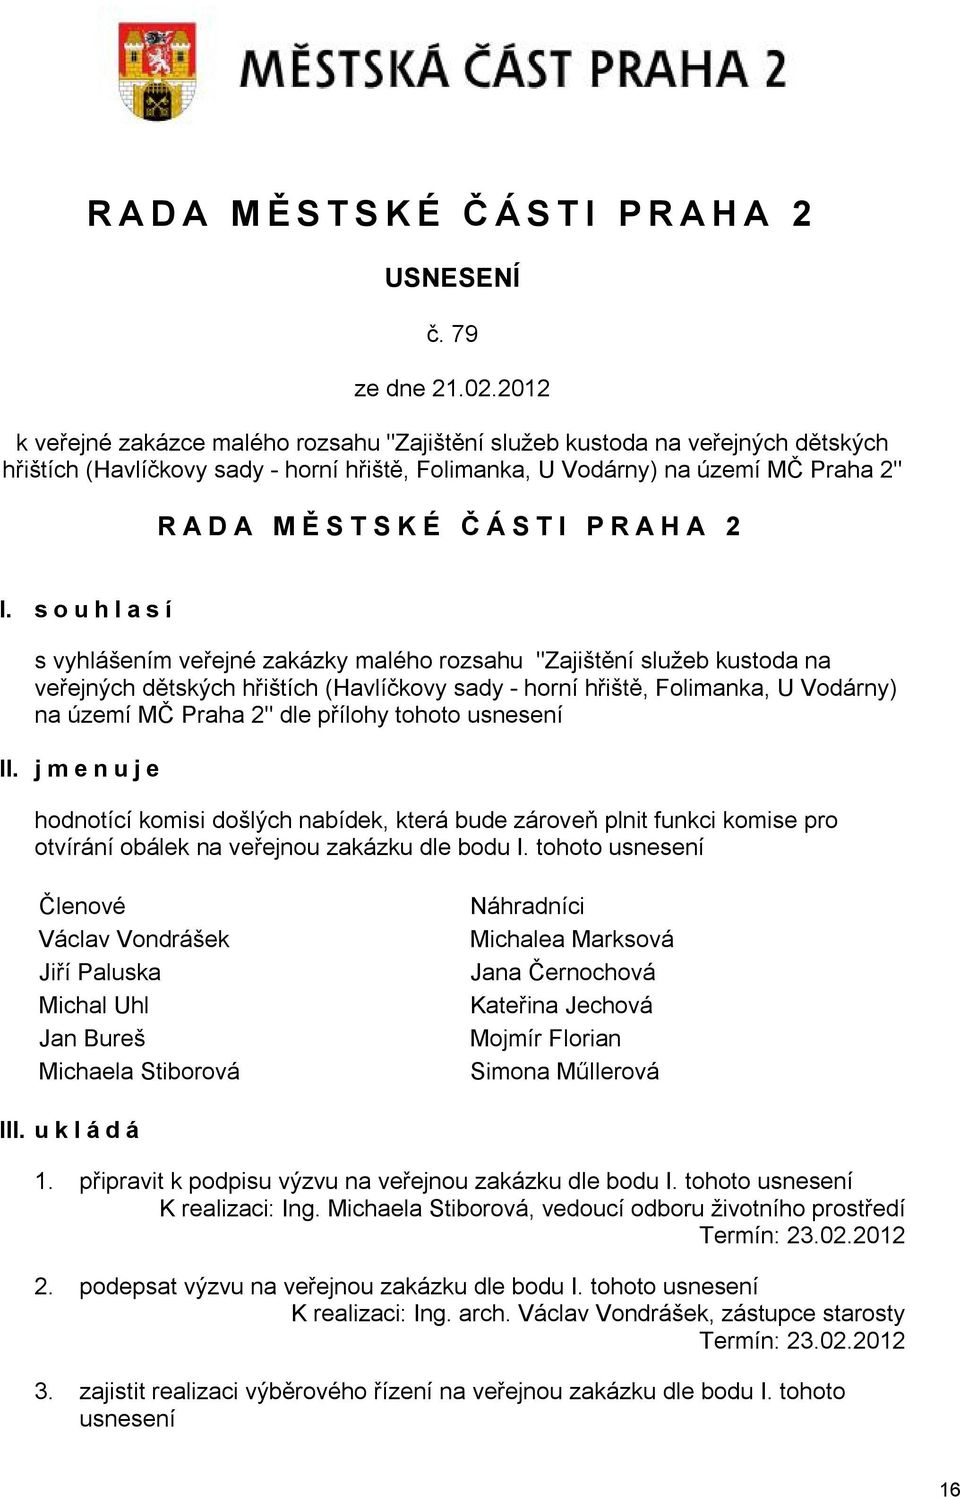 I. souhlasí s vyhlášením veřejné zakázky malého rozsahu "Zajištění služeb kustoda na veřejných dětských hřištích (Havlíčkovy sady - horní hřiště, Folimanka, U Vodárny) na území MČ Praha 2" dle